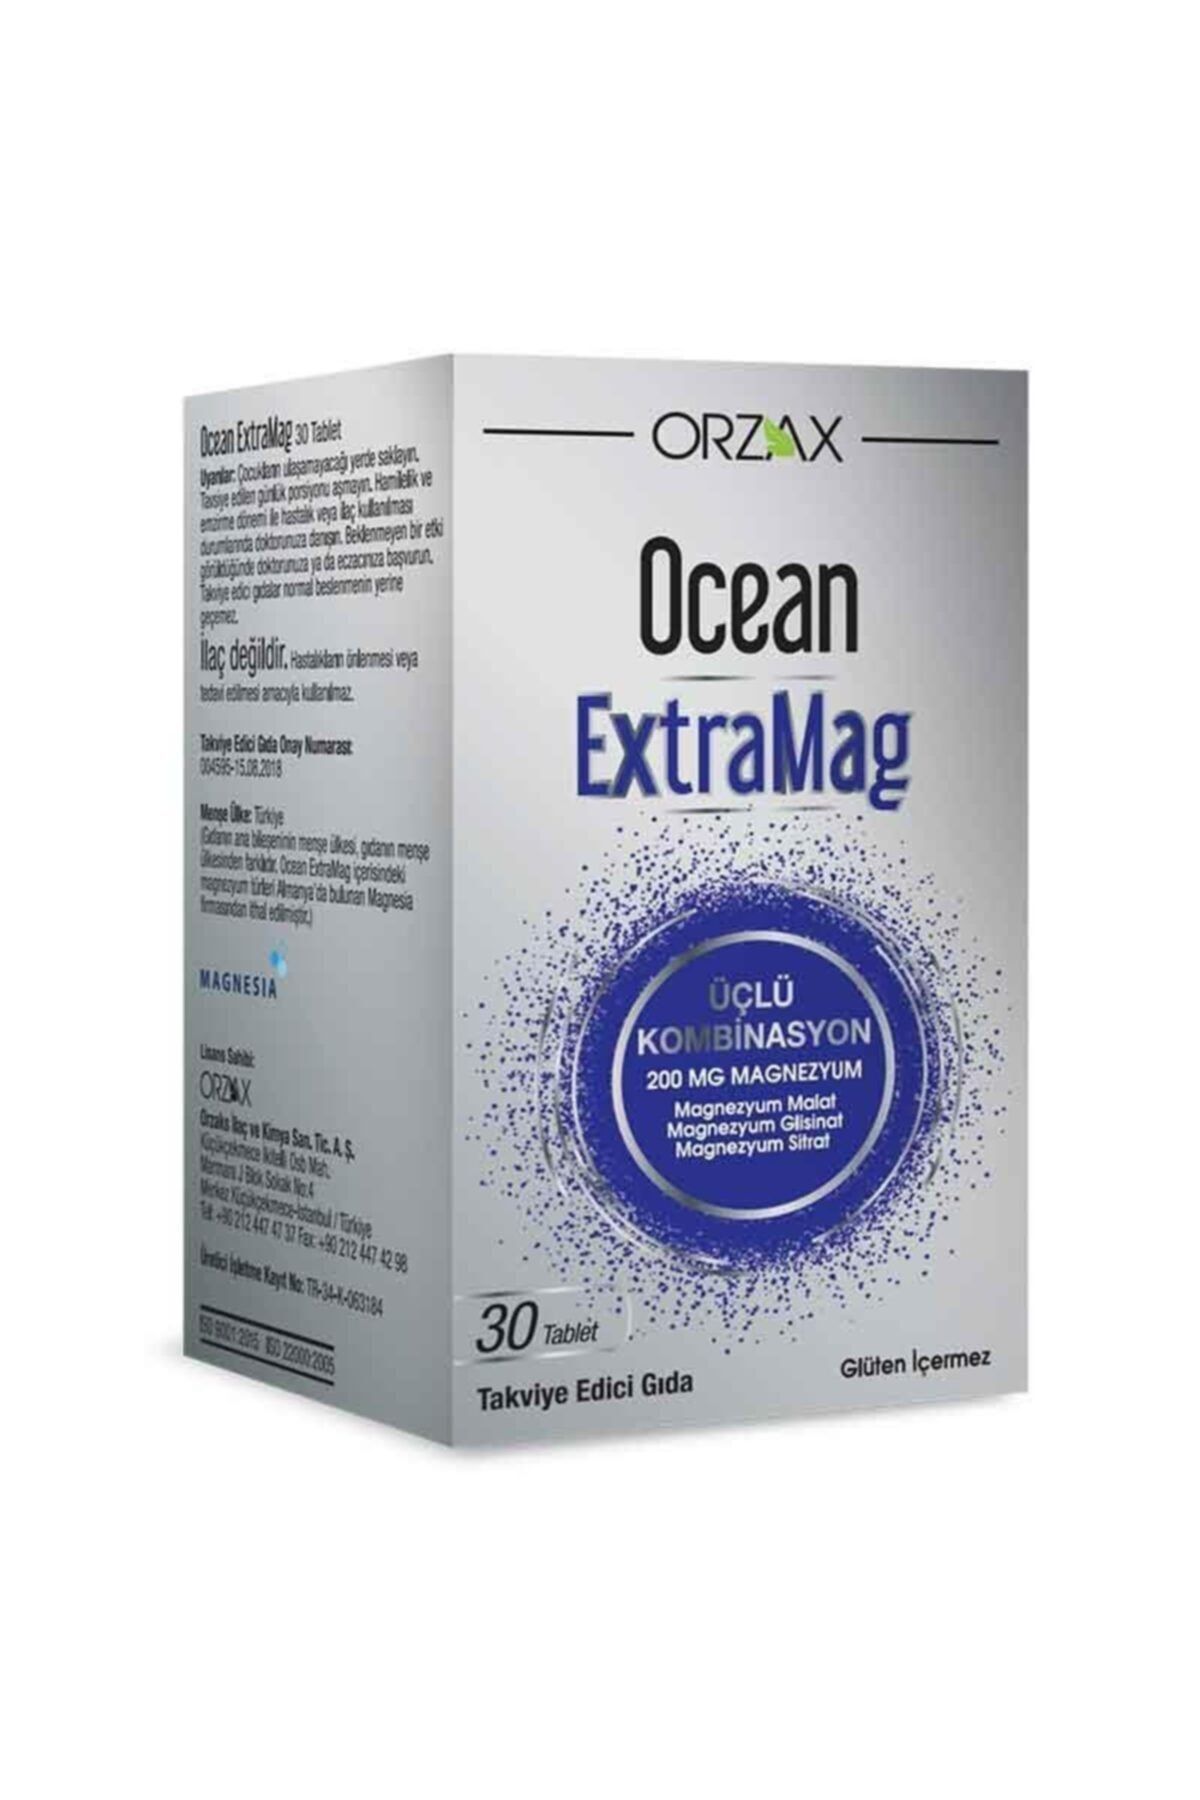 Ocean Orzax Ocean ExtraMag Üçlü Kombinasyon Magnezyum Takviye Edici Gıda 30 Tablet